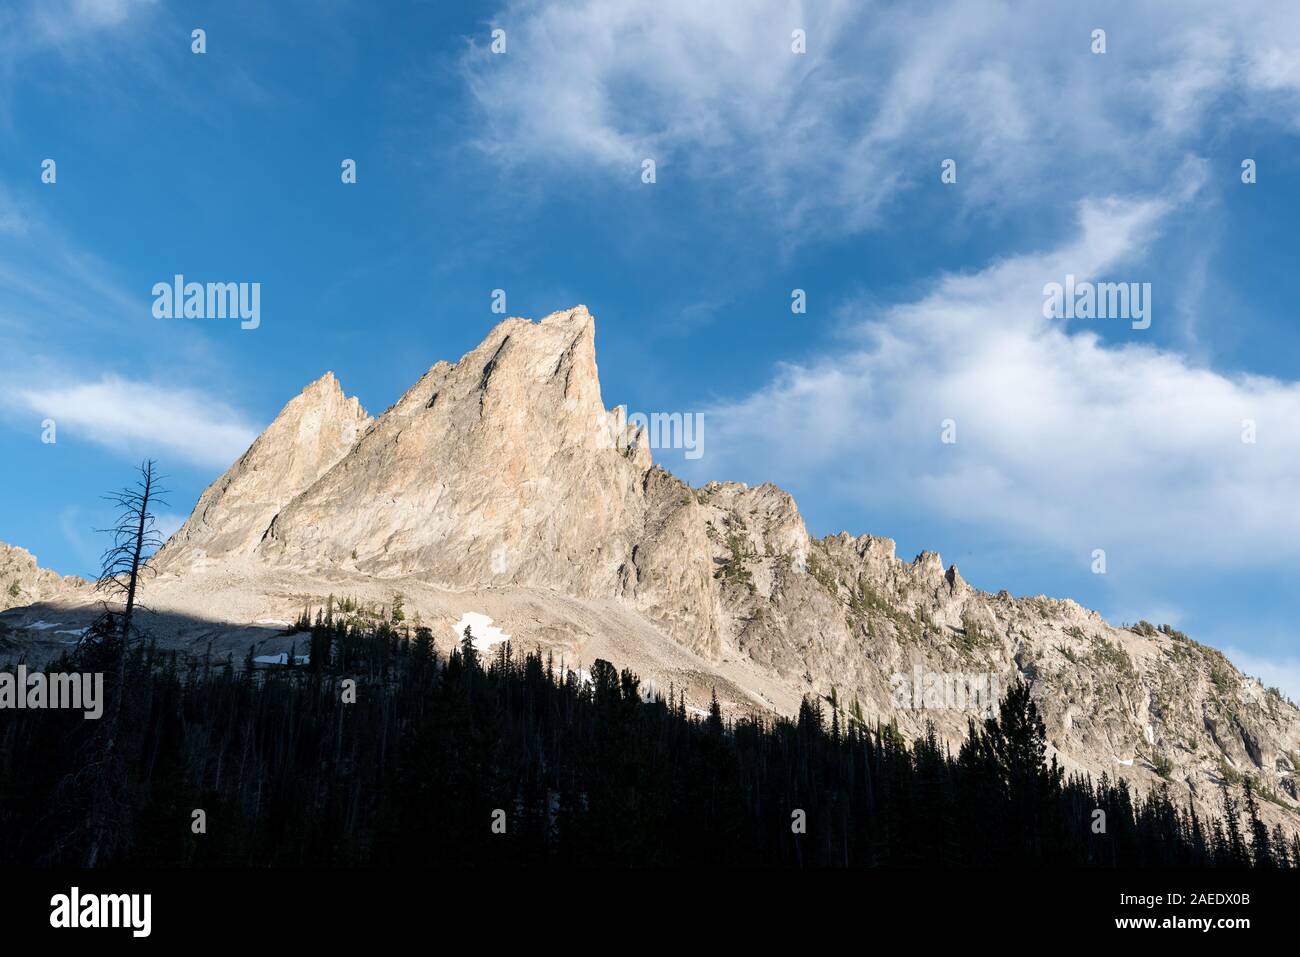 El Capitan peak in Idaho's Sawtooth Mountains. Stock Photo